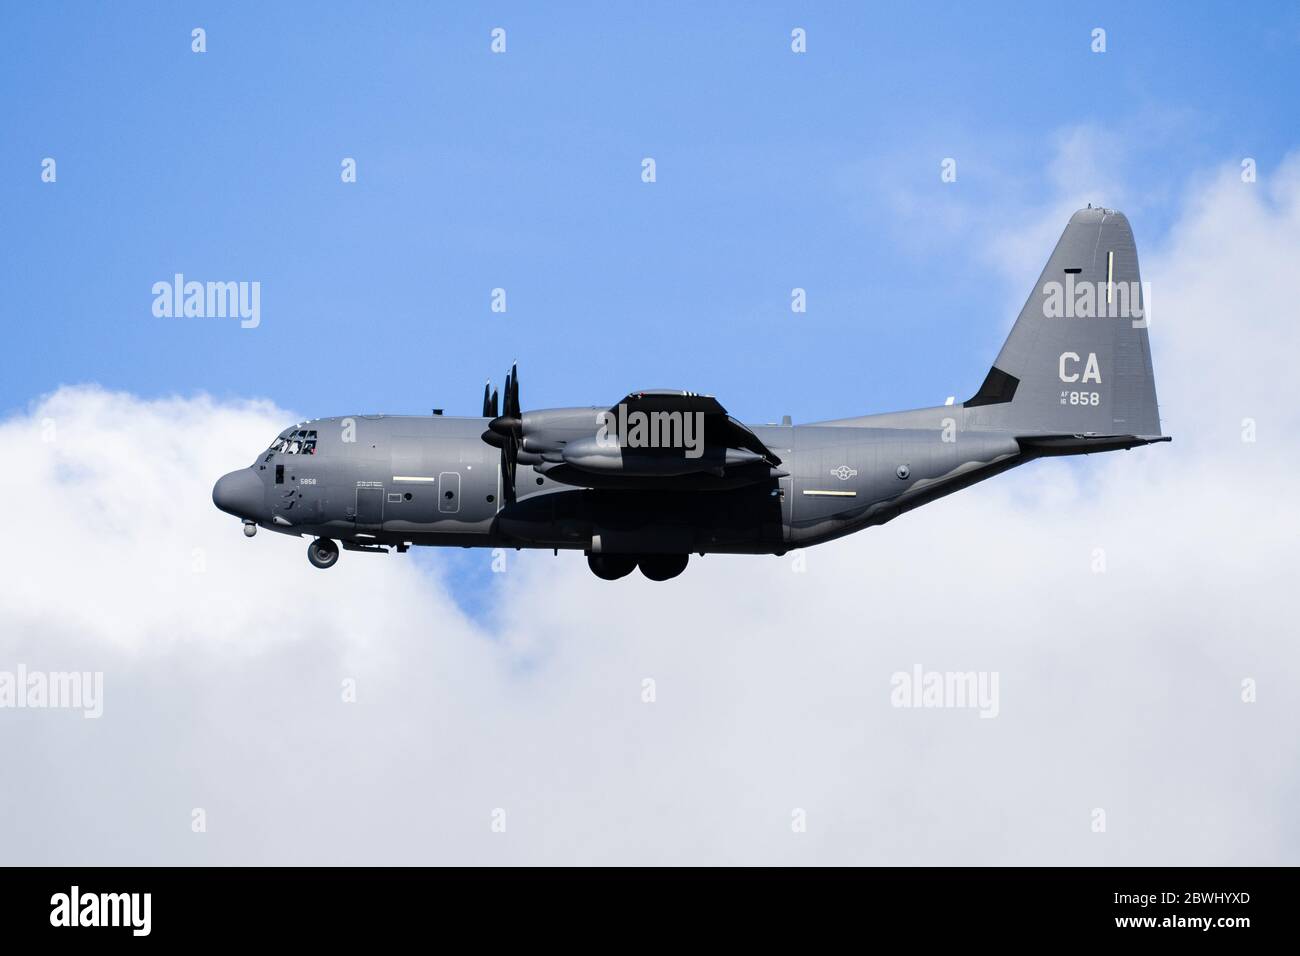 14 mai 2020 Mountain View / CA / USA - vue latérale d'un avion militaire de l'US Air Force effectuant un vol d'entraînement; ciel bleu avec des nuages blancs backgroun Banque D'Images